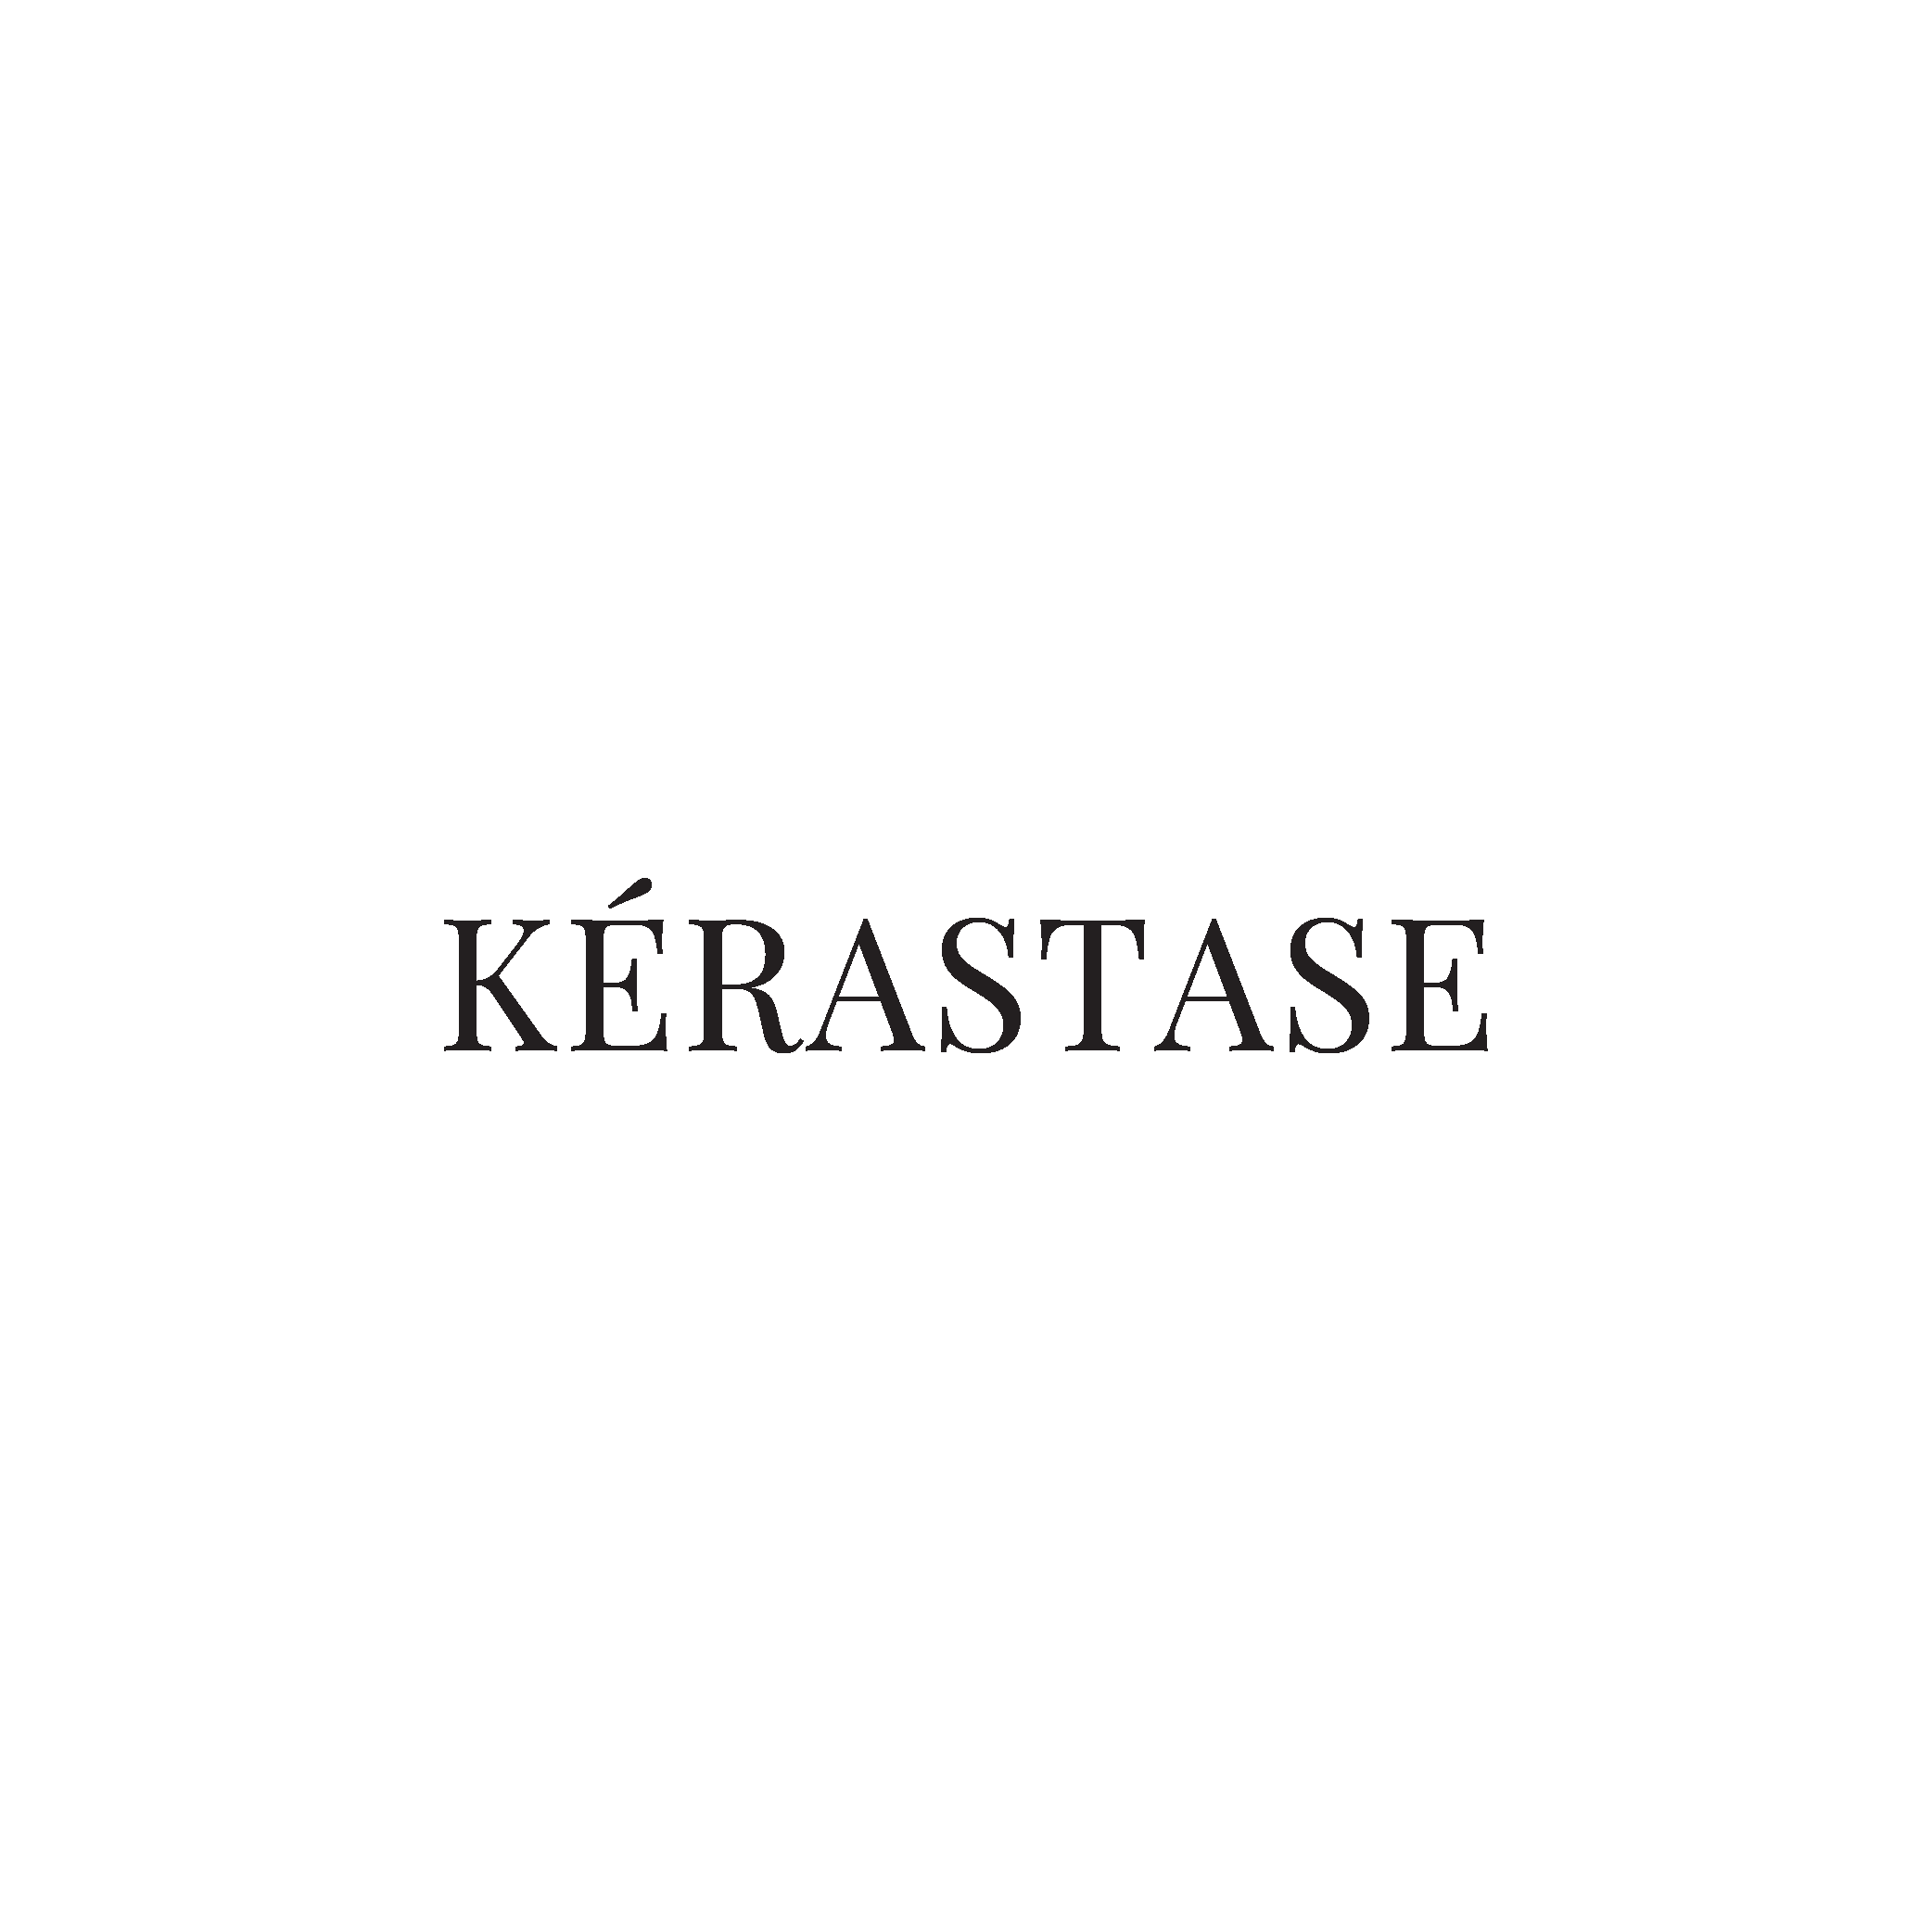 KERASTASE LOGO-01.png